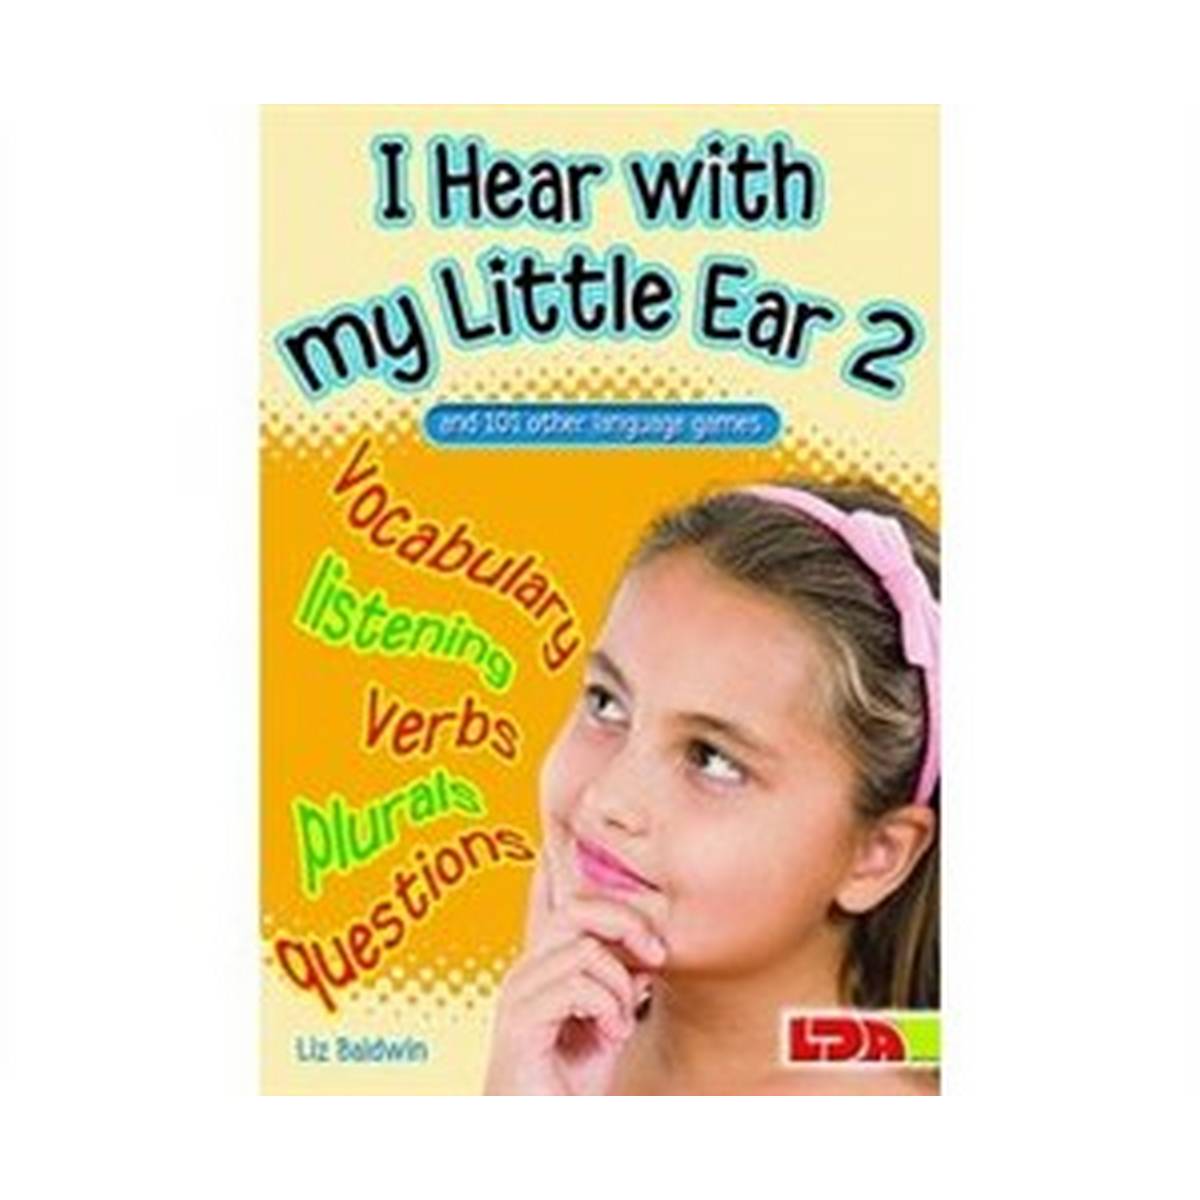 I Hear With My Little Ear 2